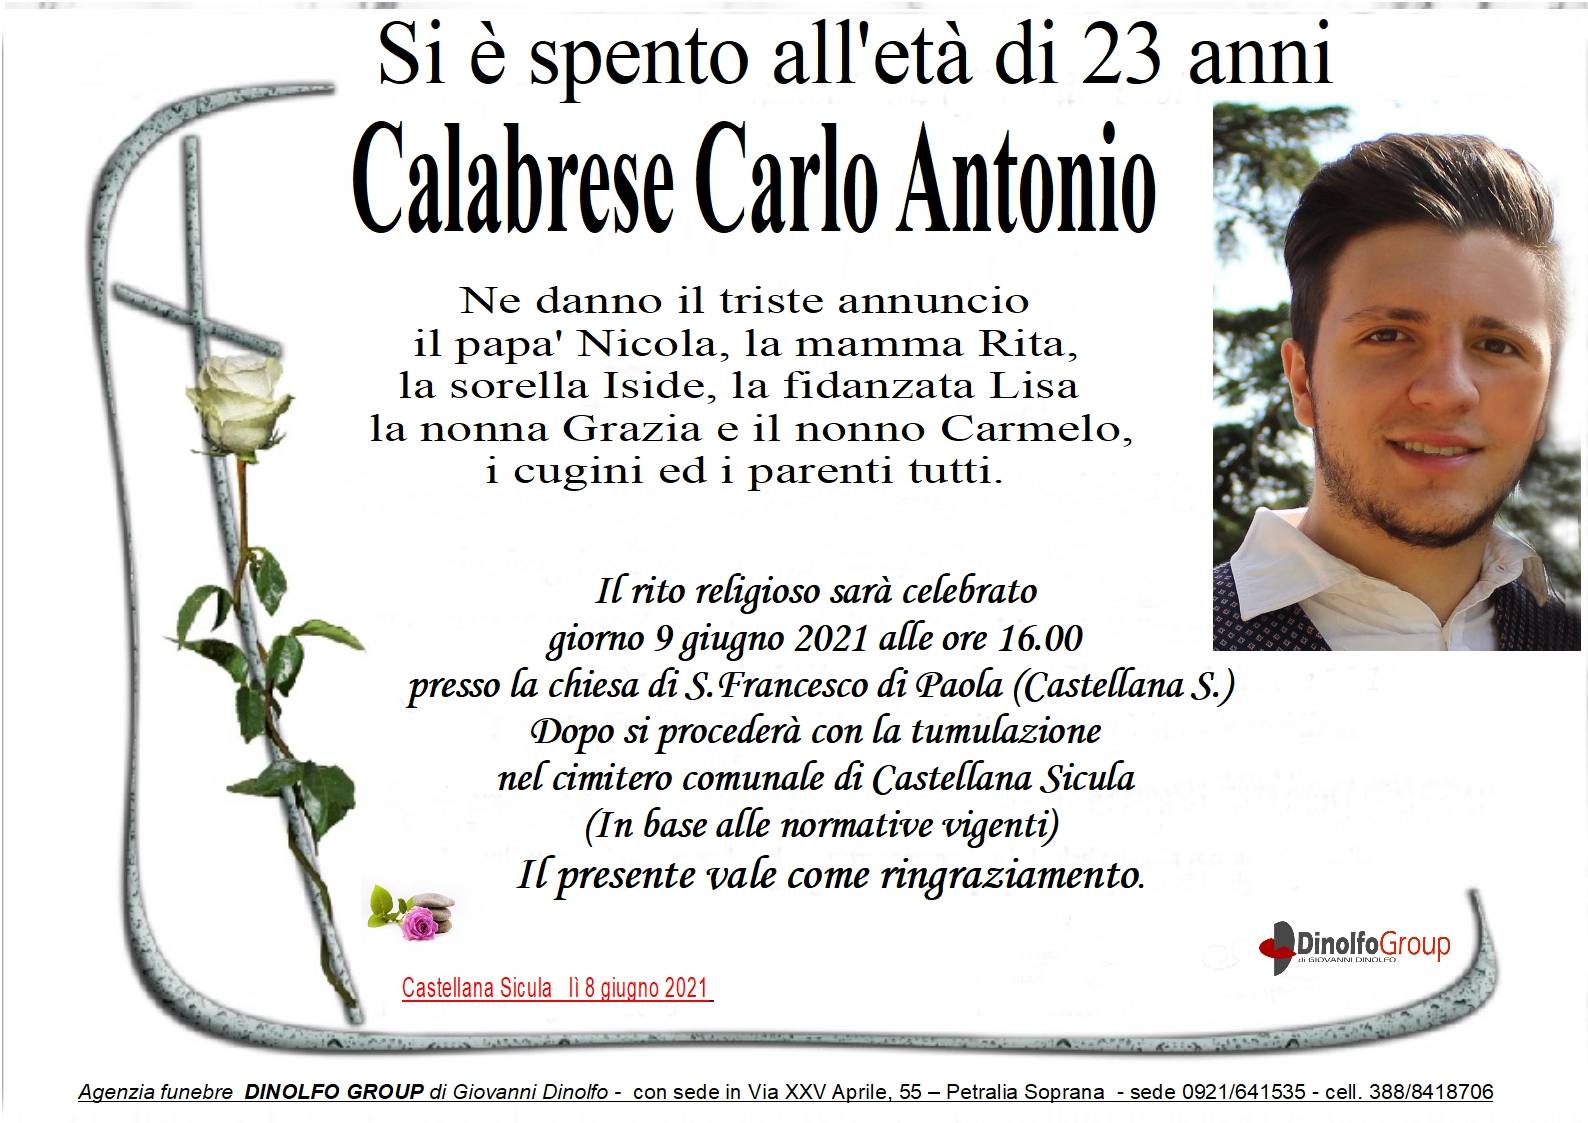 Carlo Antonio Calabrese